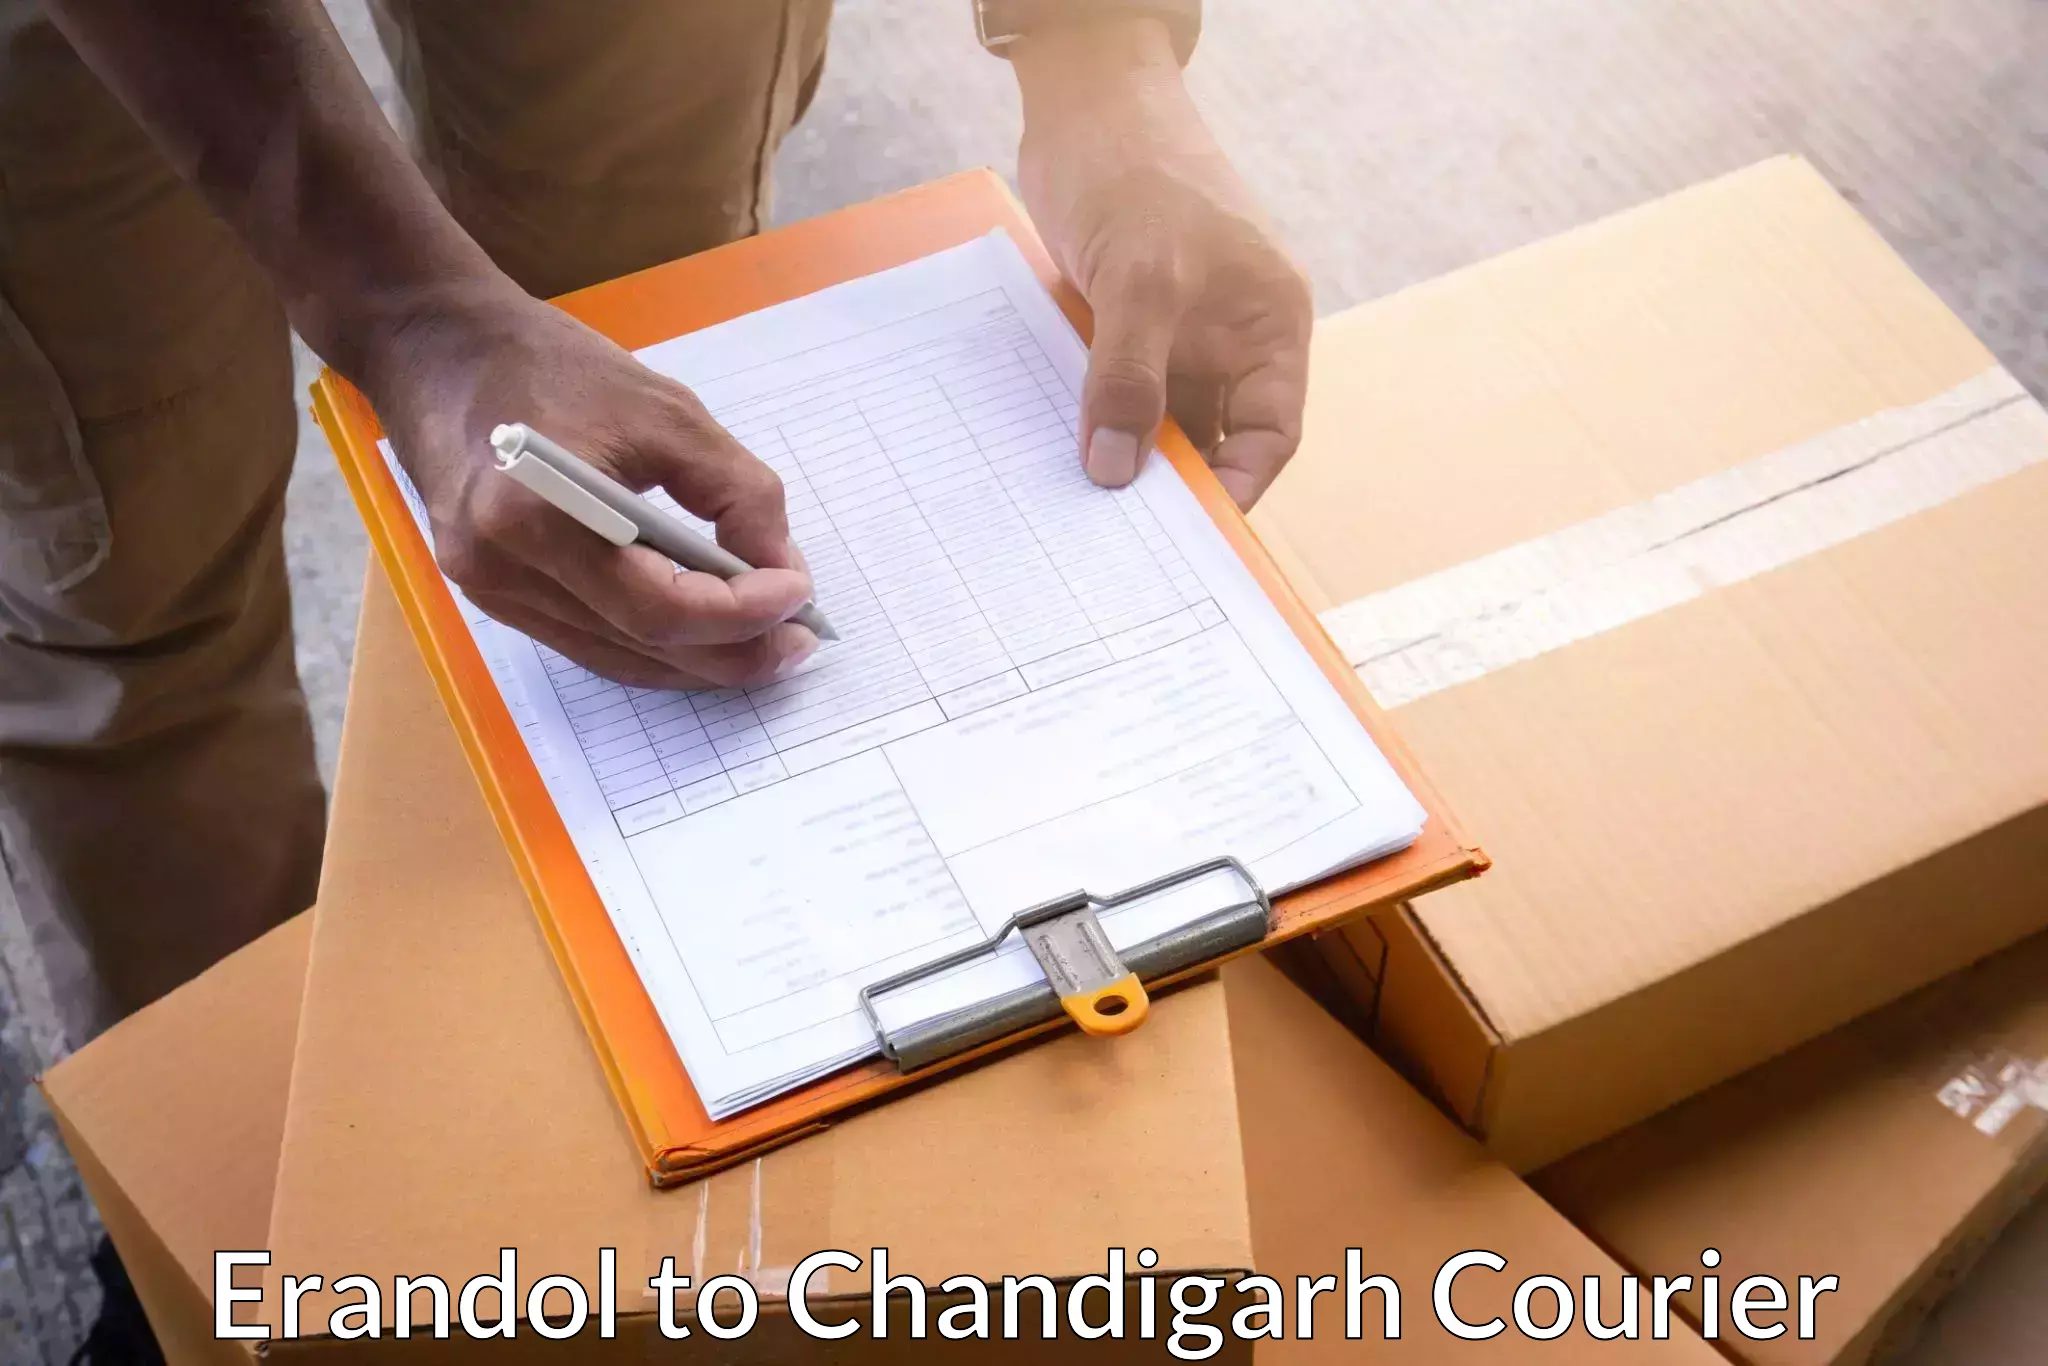 Premium courier services in Erandol to Chandigarh